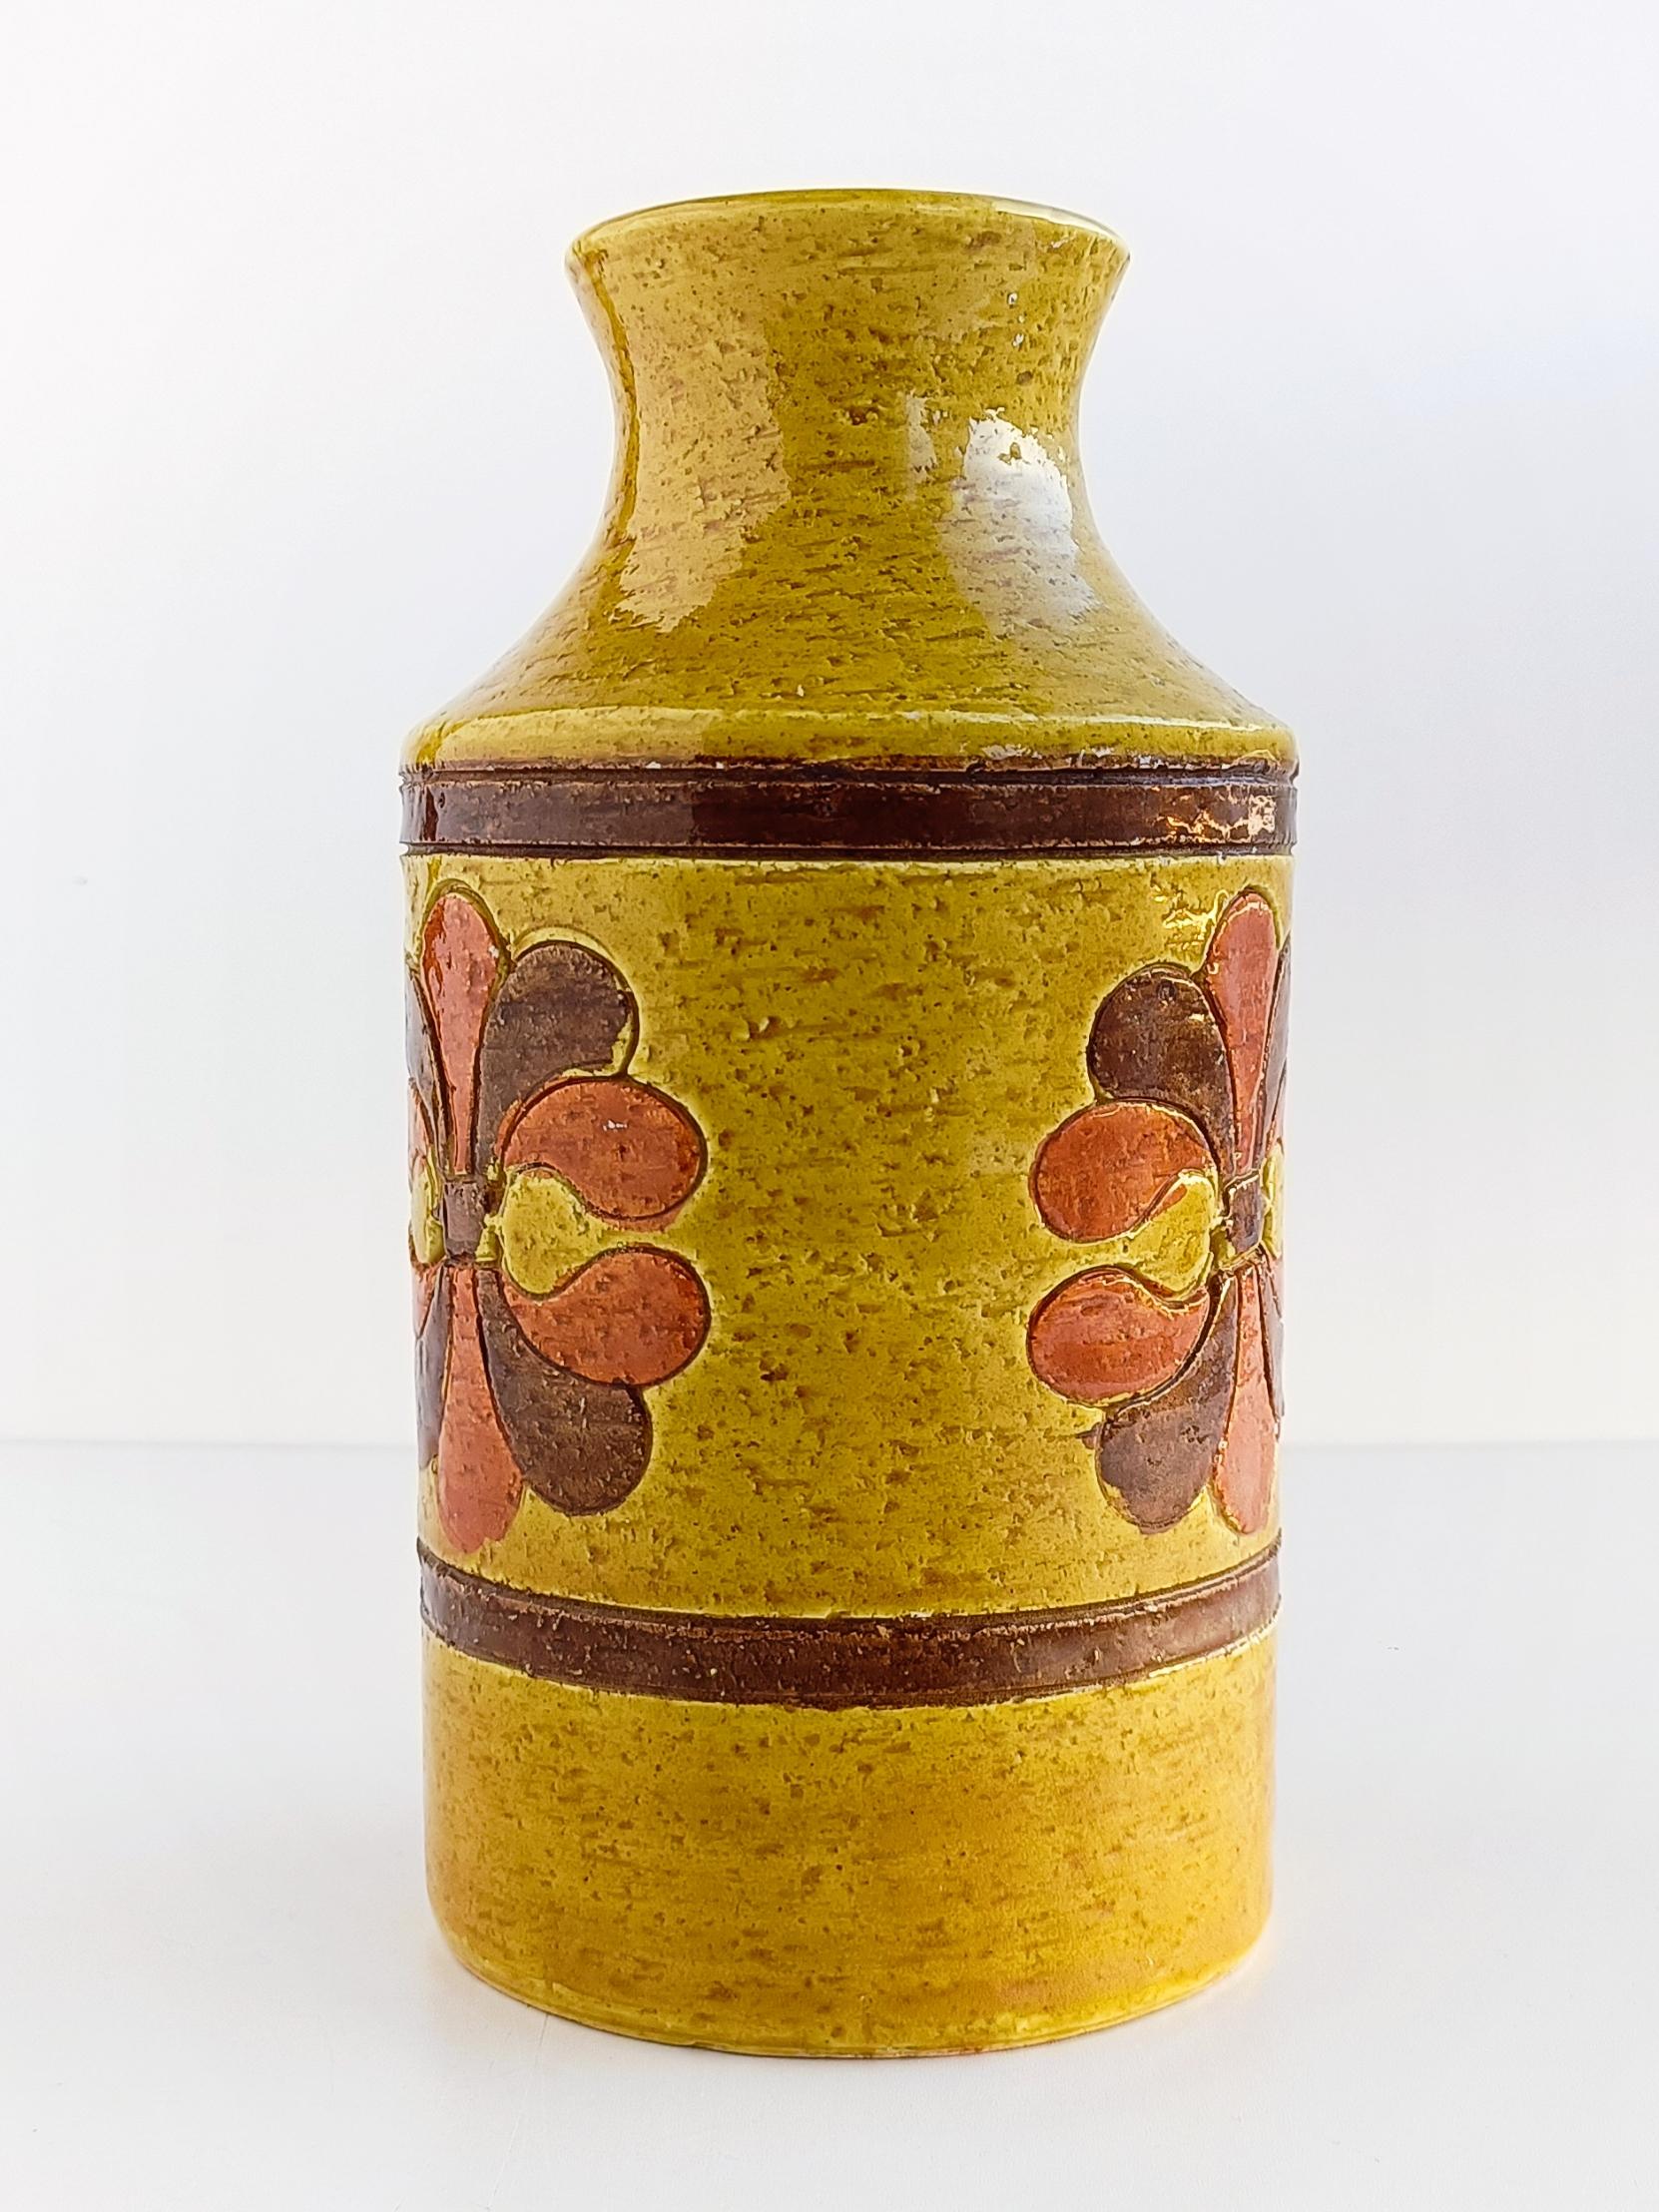 Aldo Londi était un éminent céramiste italien connu pour son travail chez Bitossi Ceramiche. Les céramiques de Bitossi sont très appréciées pour leurs designs distinctifs et leur savoir-faire, ce qui les rend très recherchées par les collectionneurs